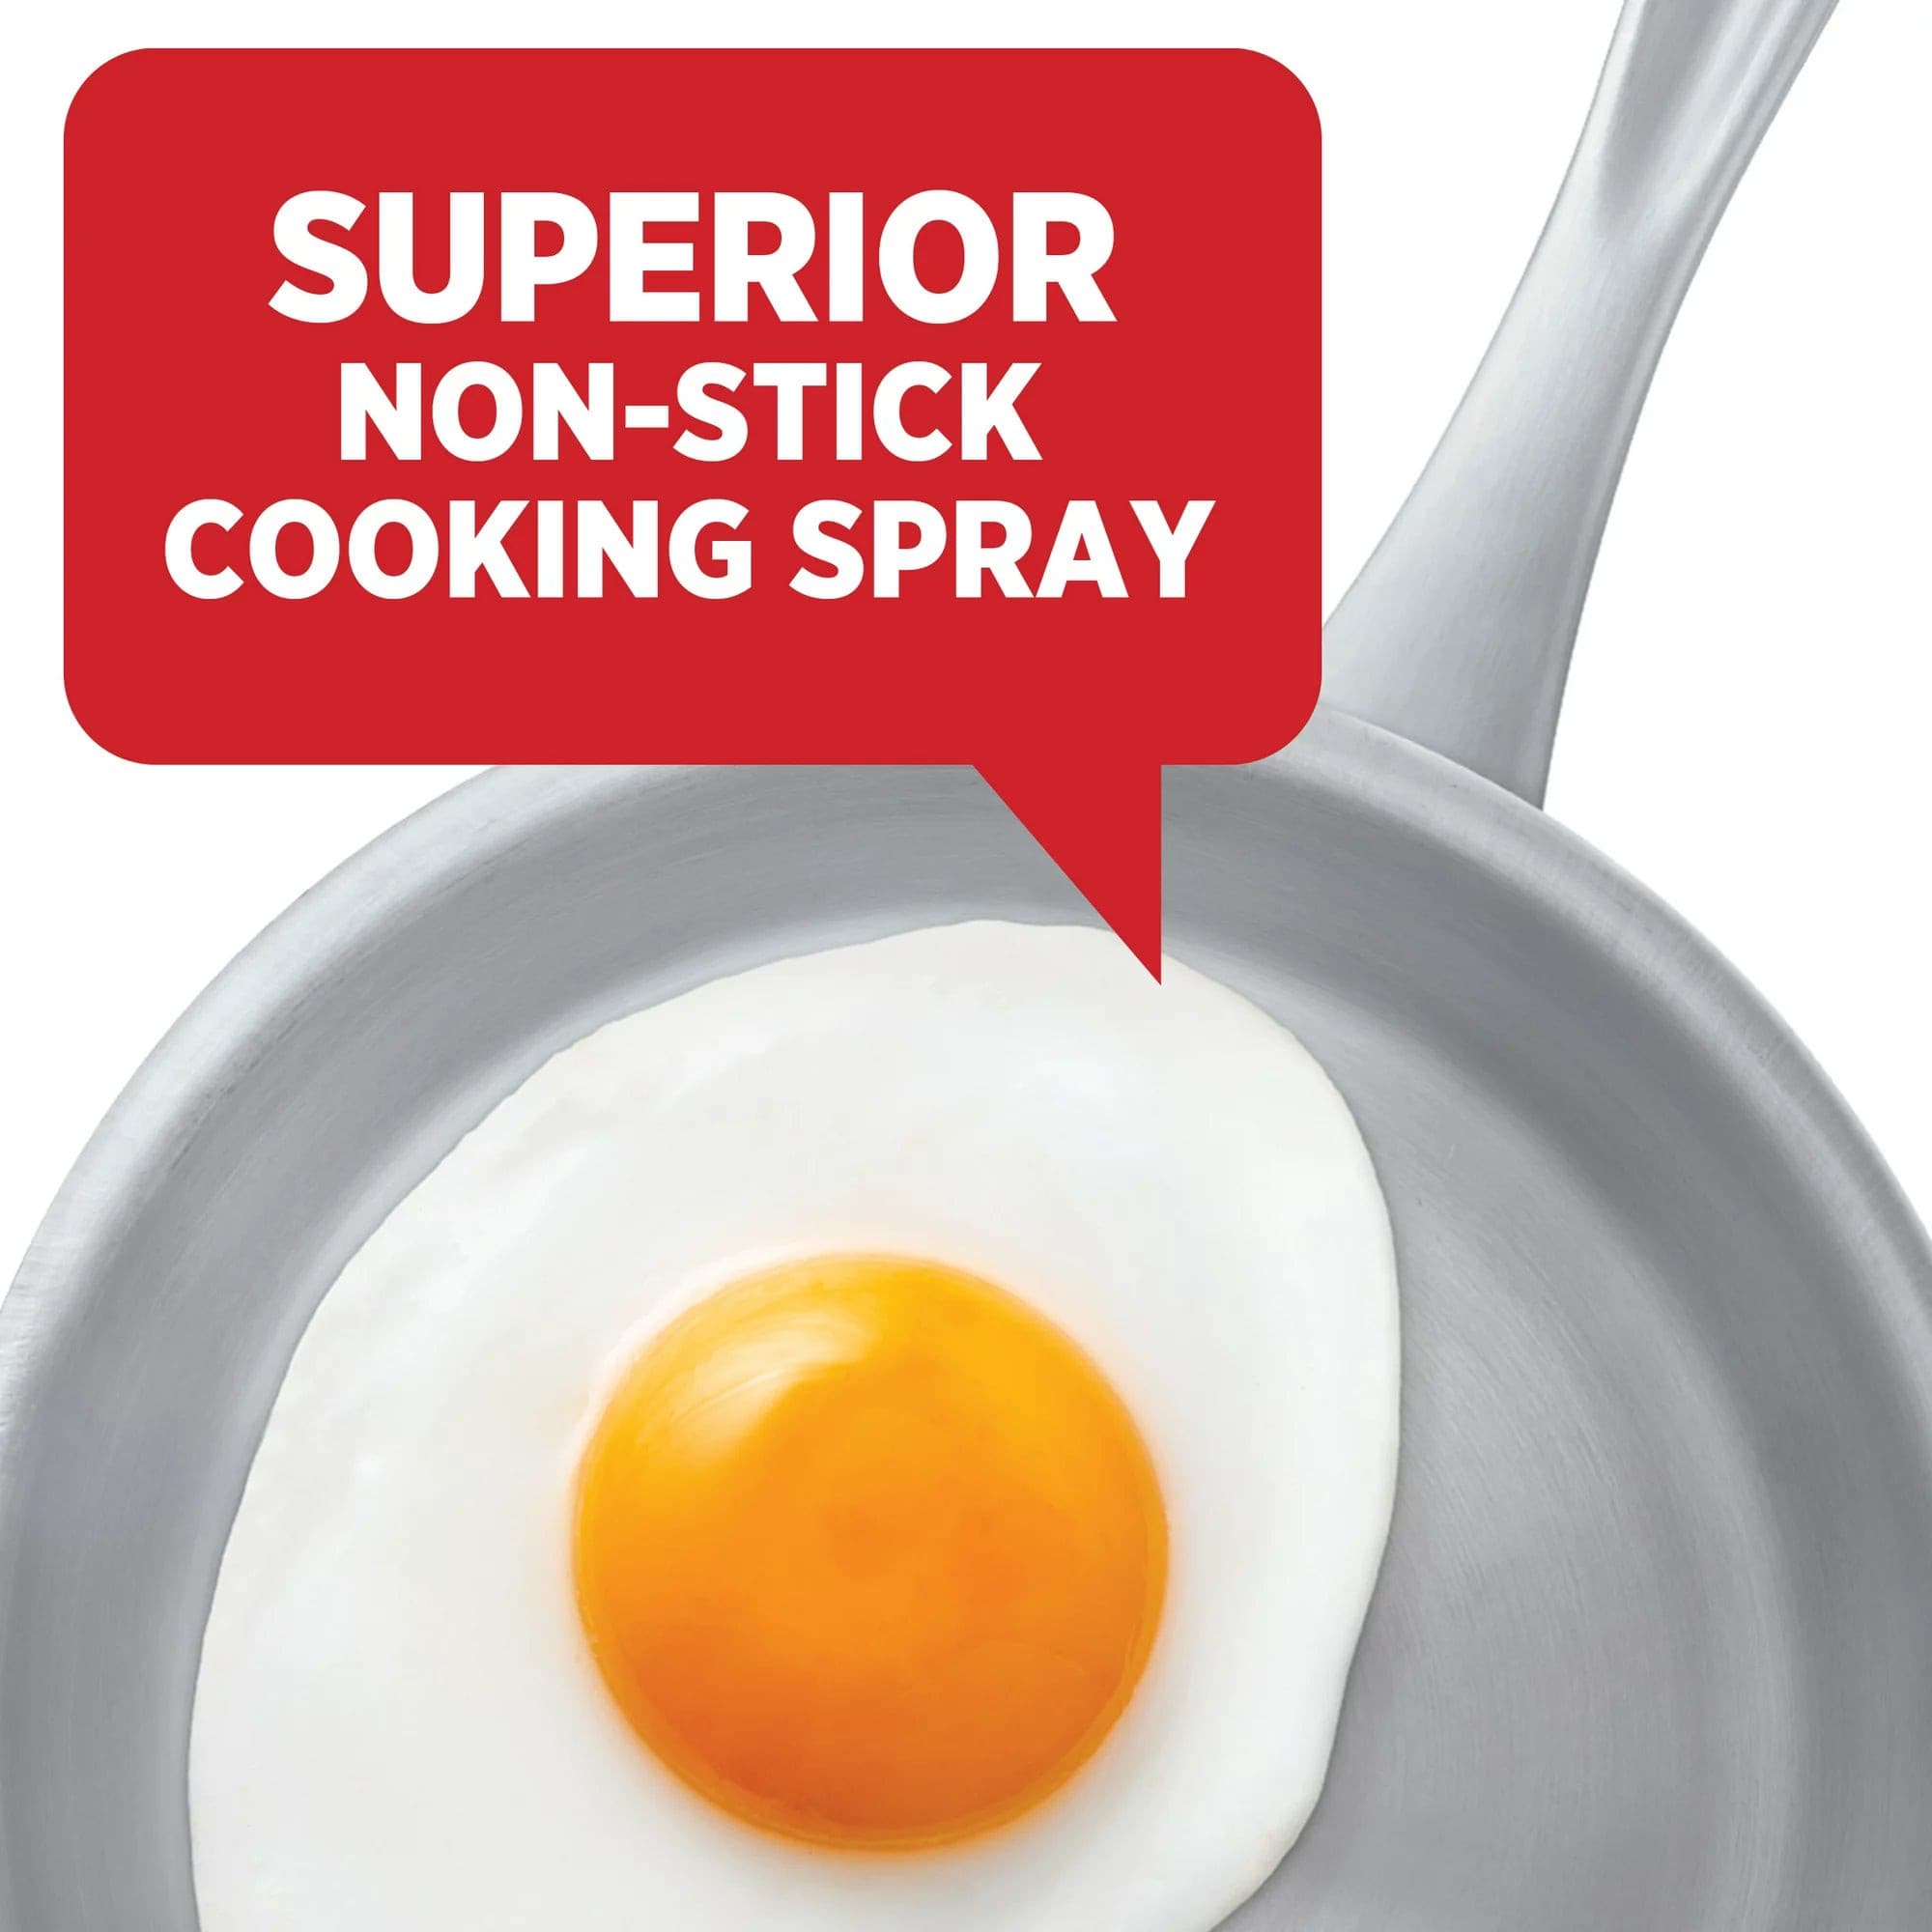 Original No-Stick Cooking Spray - Crisco Cooking Spray